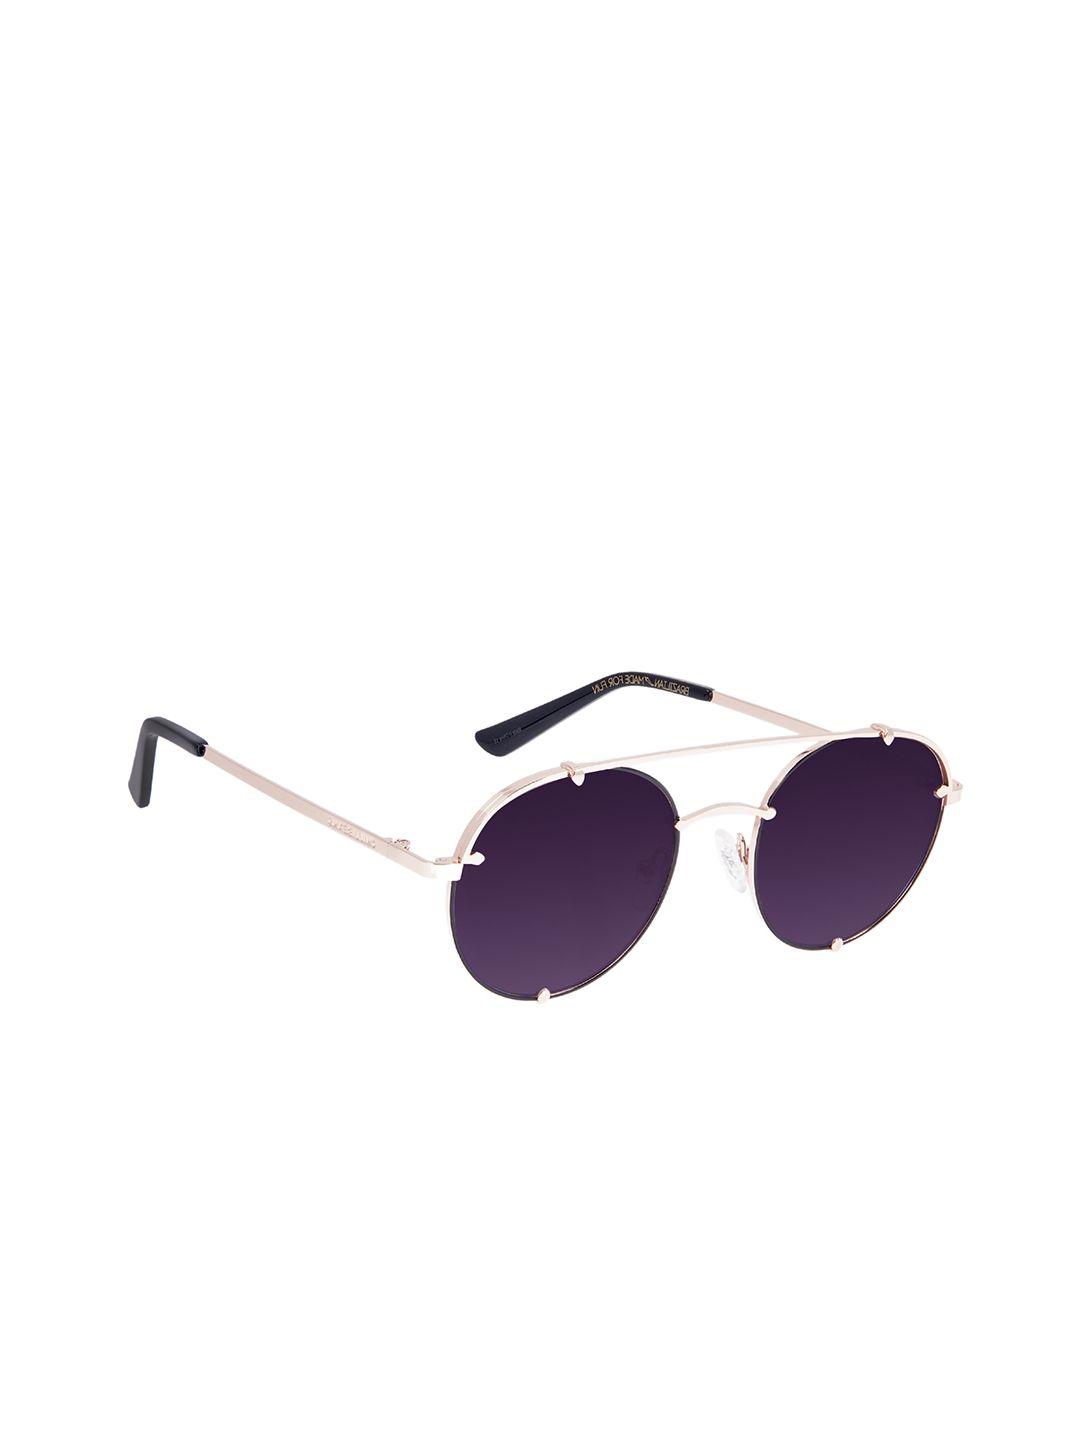 chilli beans unisex violet lens & gold frame round sunglasses ocmt30642021